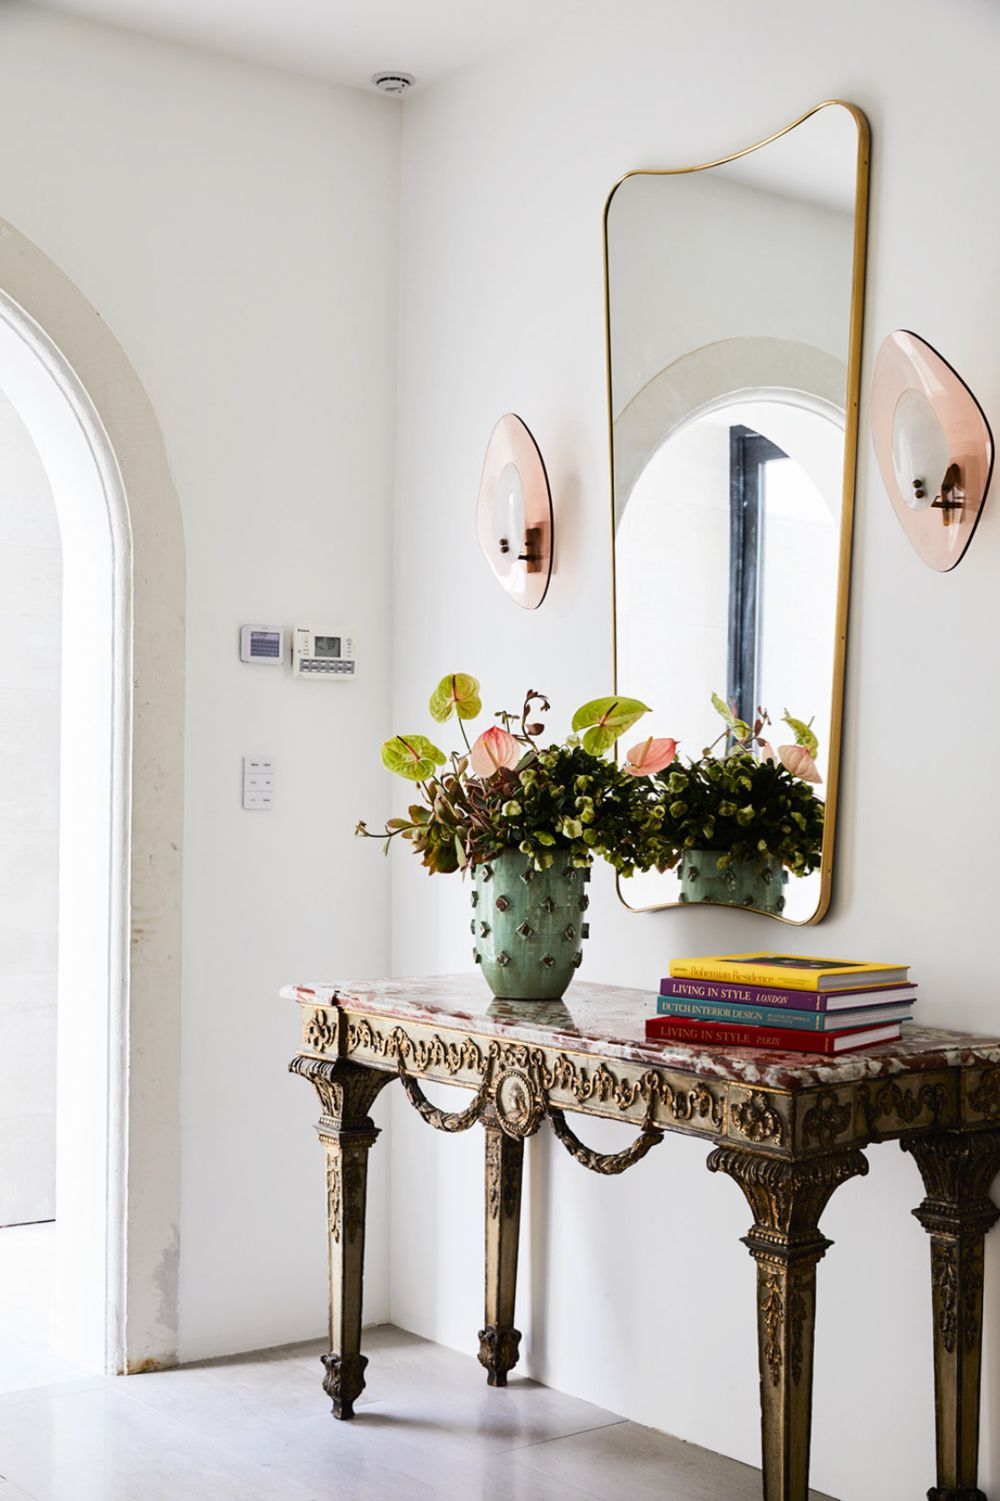 Một chiếc bàn nhỏ, dáng cao theo phong cách tùy chọn, kết hợp với vài cuốn sách, lọ hoa duyên dáng hay phụ kiện trang trí sẽ thể hiện được gu thẩm mỹ của chủ nhà.